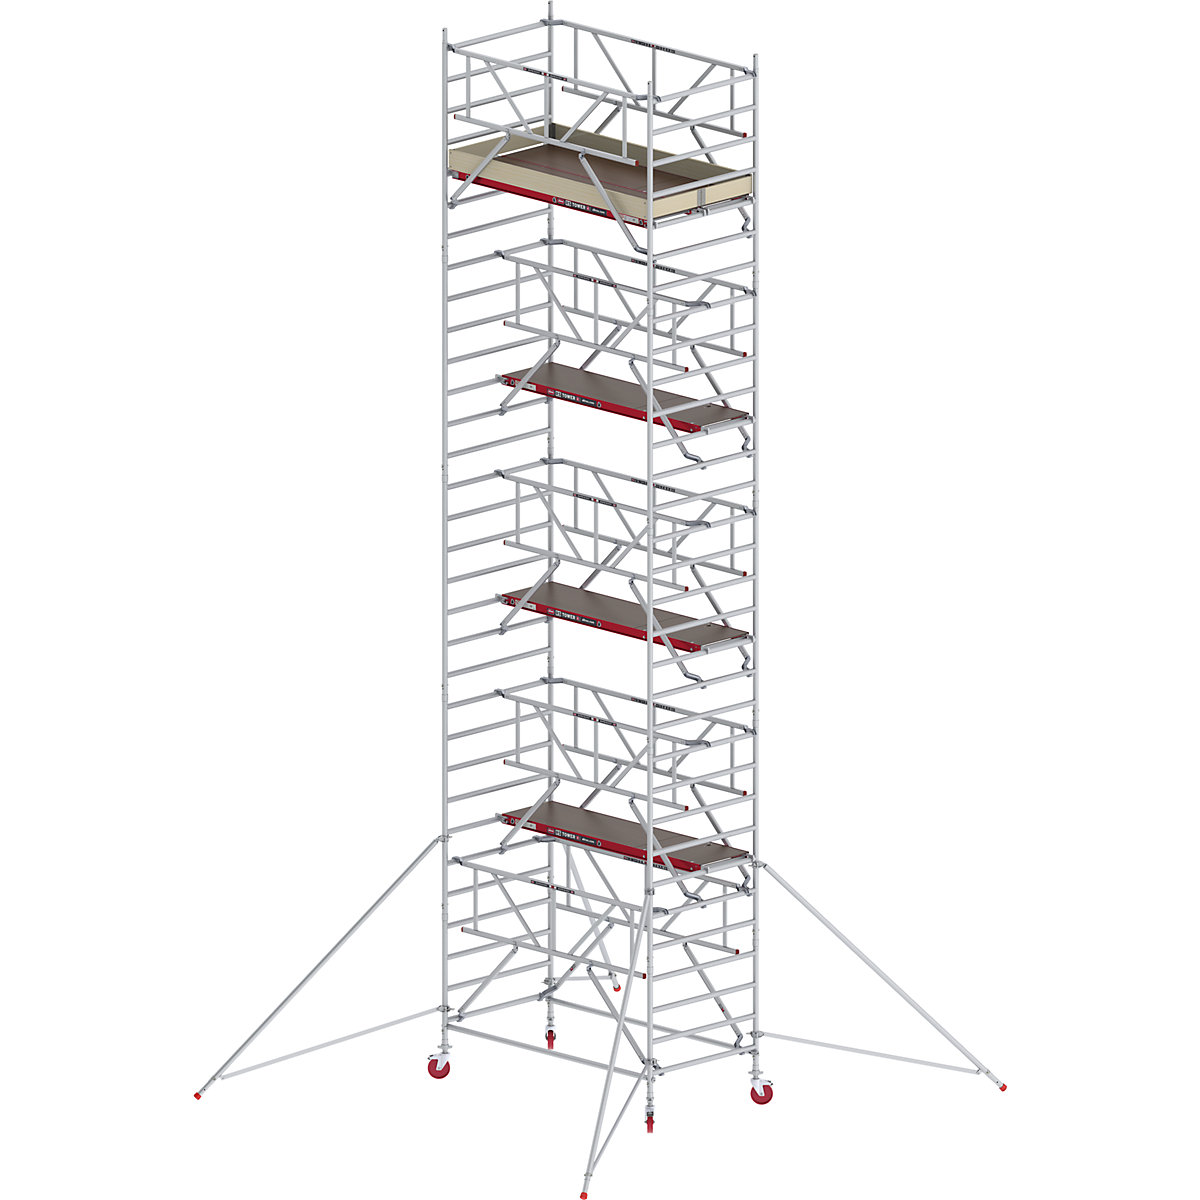 Fahrgerüst RS TOWER 42 breit mit Safe-Quick® Altrex, Holzplattform, Länge 1,85 m, Arbeitshöhe 10,20 m